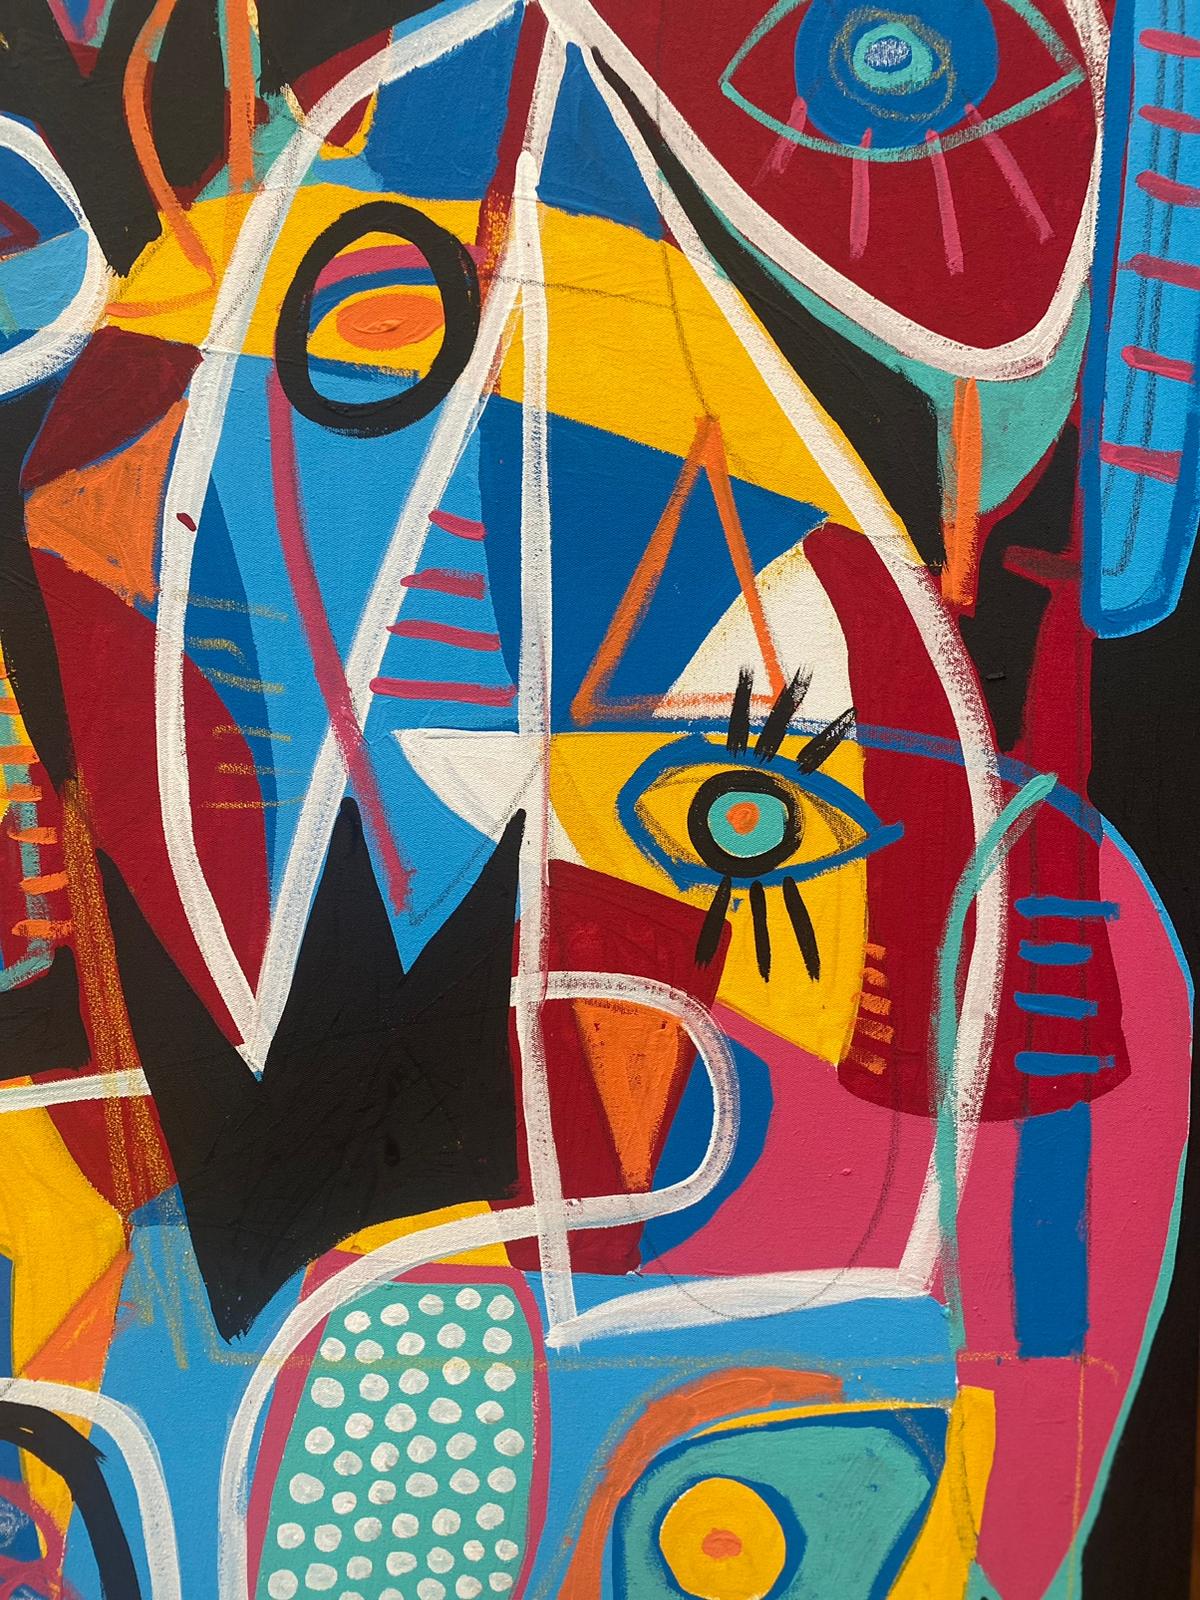 Art contemporain, peinture abstraite
Acrylique sur toile
130x170cm
Signé 



A propos de l'artiste
Enrique Pichardo (Mexico, 1973) est diplômé de l'Escuela Nacional de Pintura, Escultura y Grabado (ENPEG) 